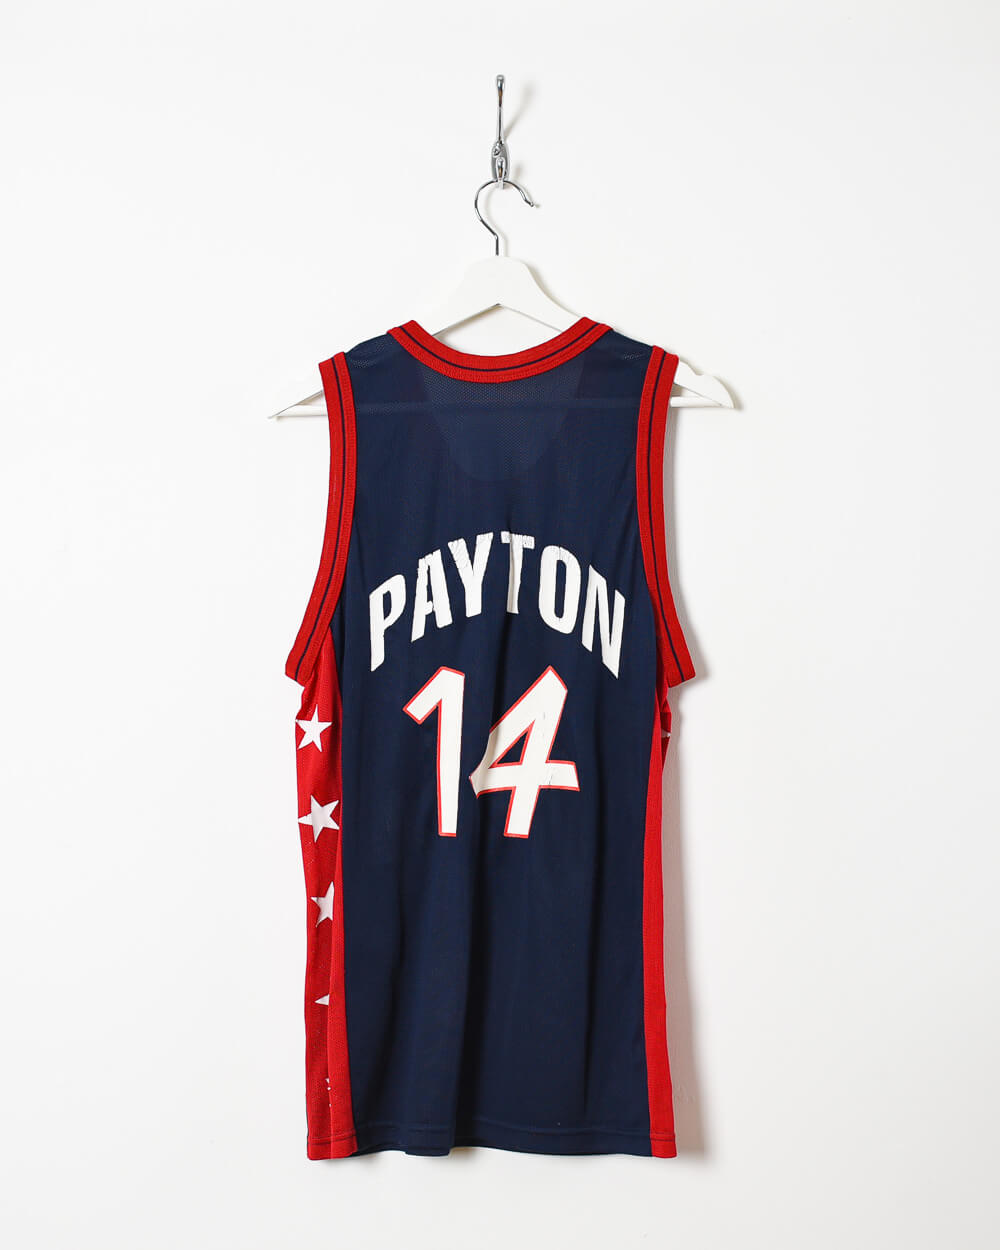 Navy Champion USA Basketball Payton 14 Vest - Medium